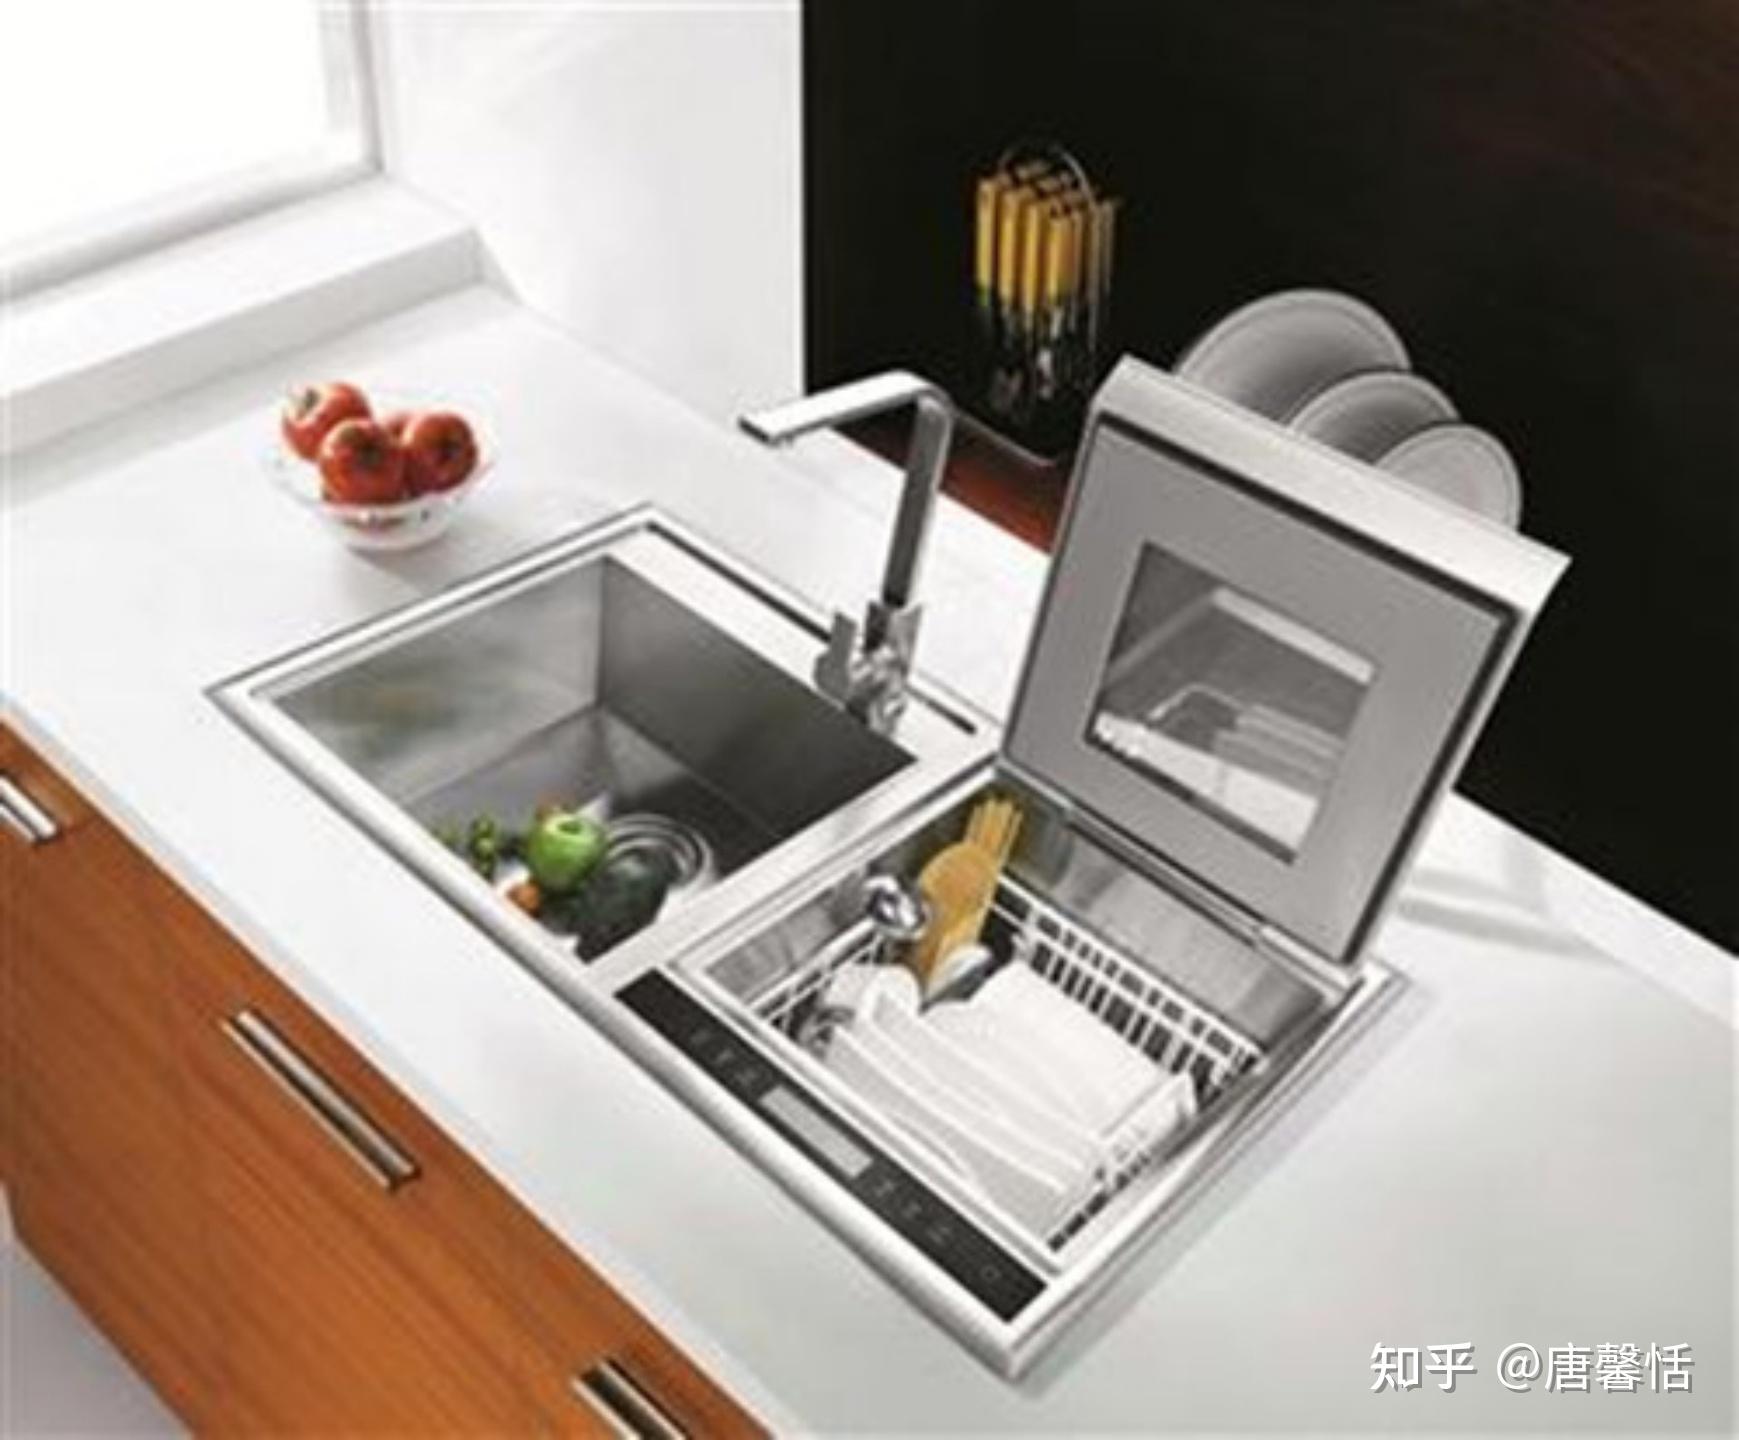 嵌入式洗碗机可以独立放在外面，当做台式使用吗？ - 知乎